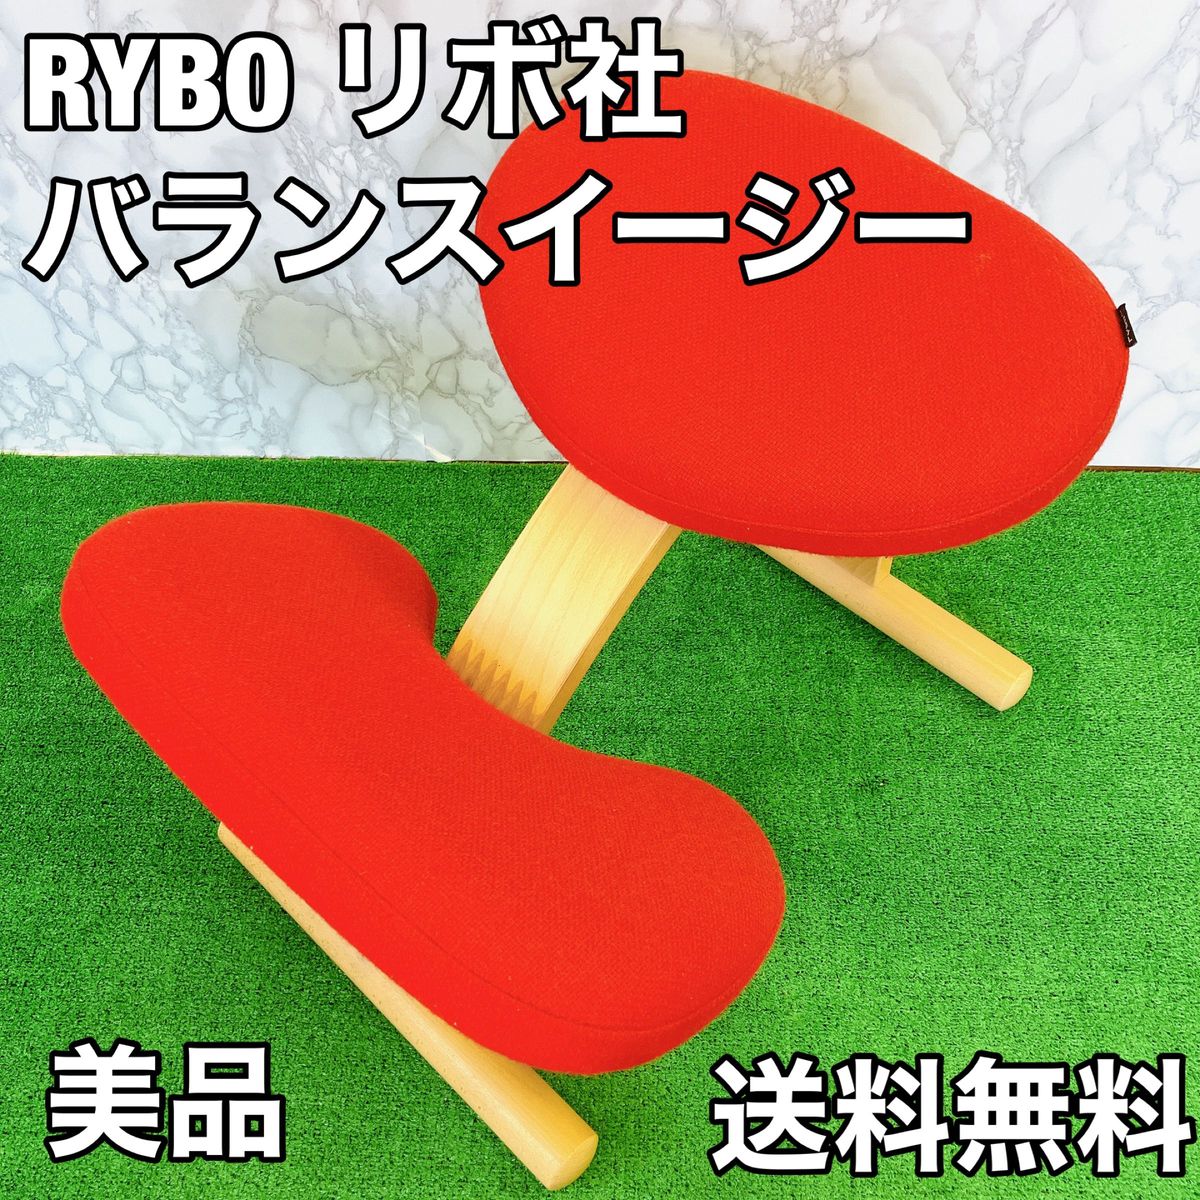 Rybo リボ Balans Easy バランスチェア イージー レッド-